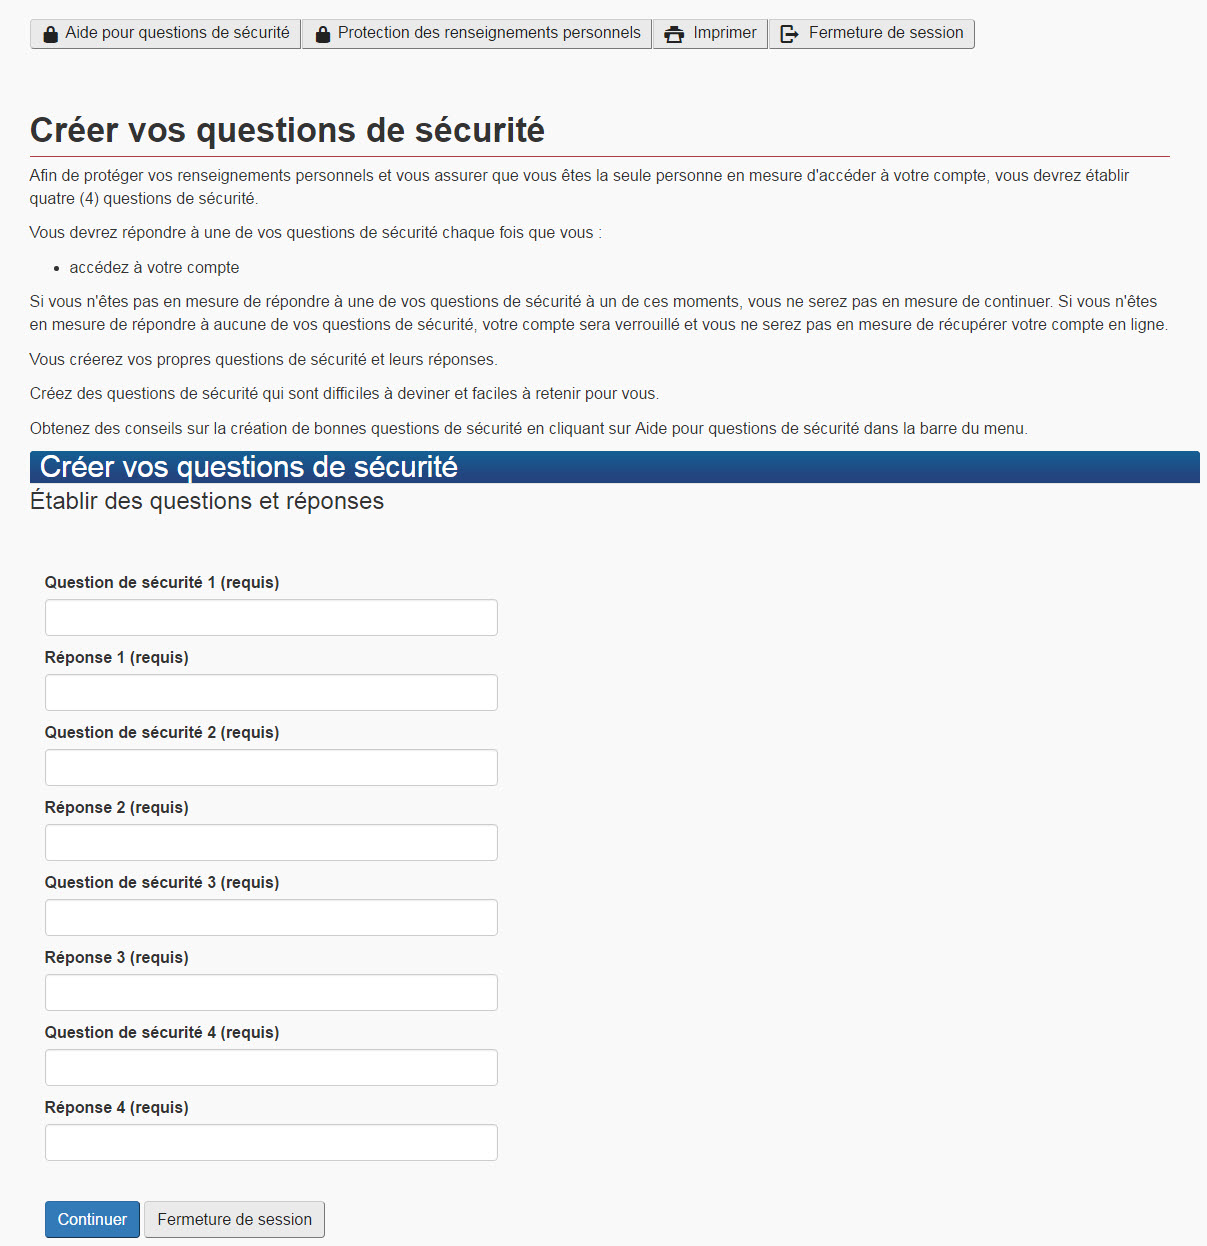 Image du formulaire Web sur les questions de sécurité, tel que décrit ci-dessus.